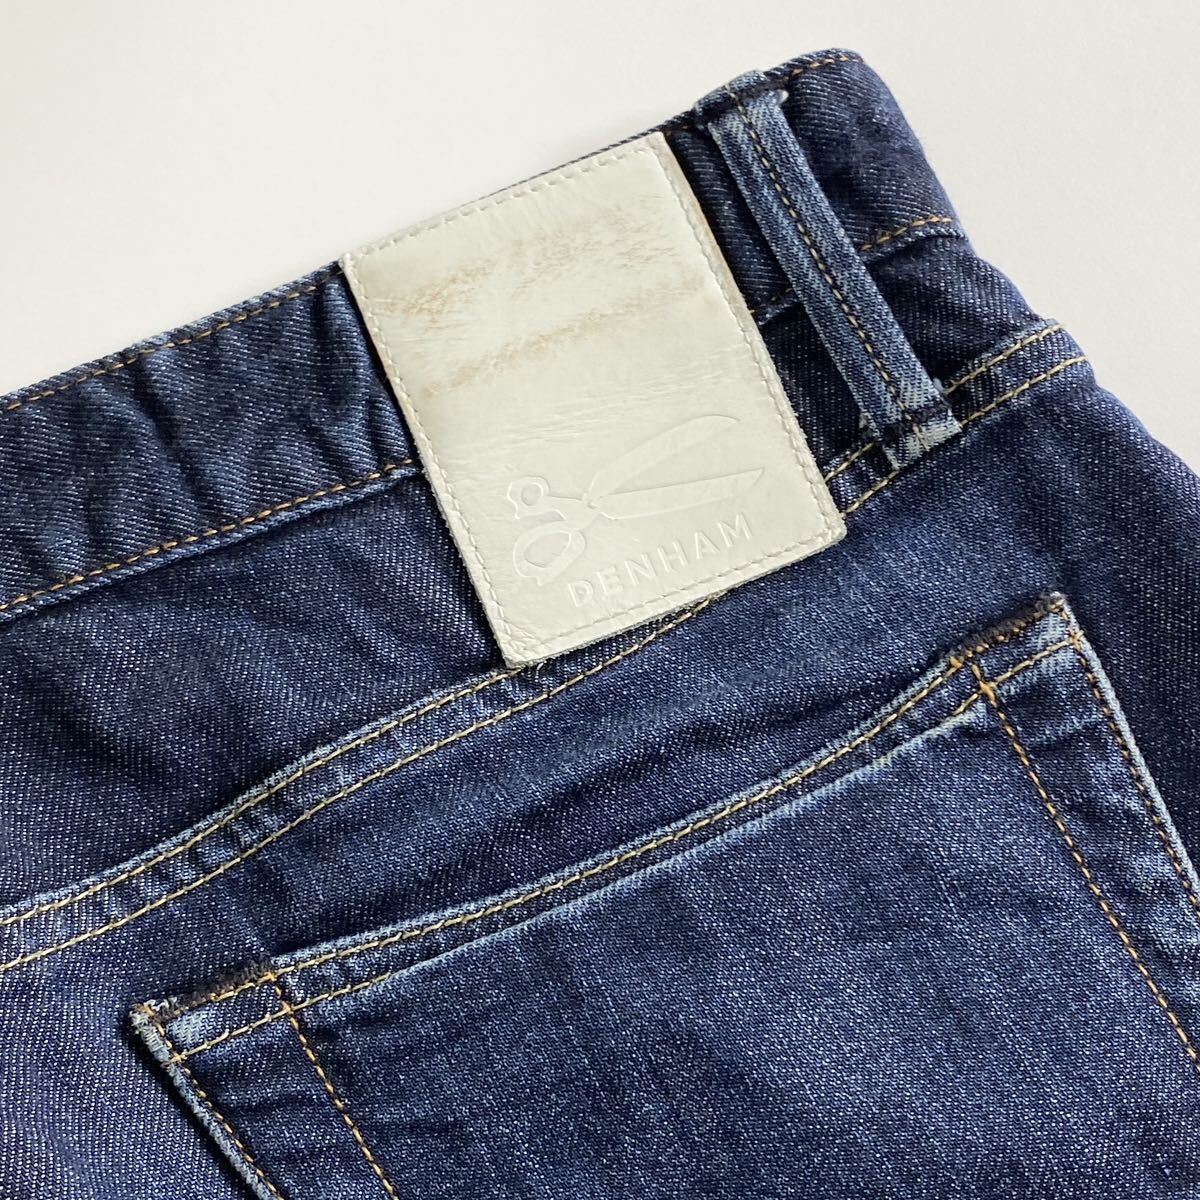 De1 DENHAMten ветчина Denim брюки джинсы Denim узкие брюки W33 L32 L размер соответствует мужской джентльмен одежда 